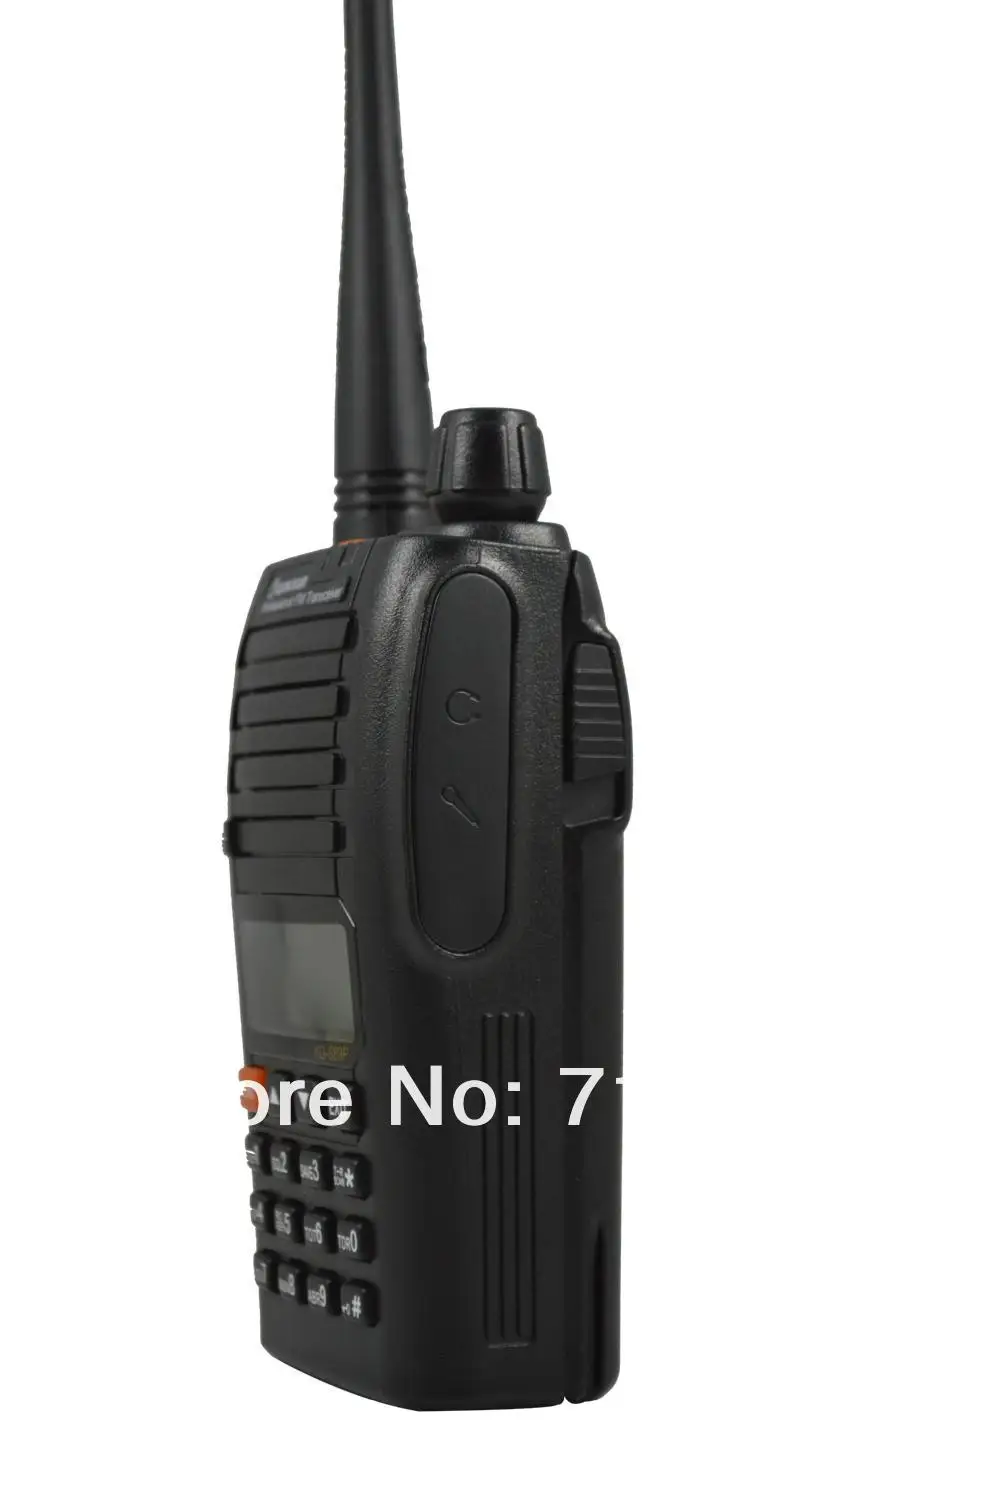 WOUXUN двухстороннее радио KG-689P UHF 4 Вт 128ch двухчастотный двойной Дисплей двойной резервный FM трансивер с скремблер